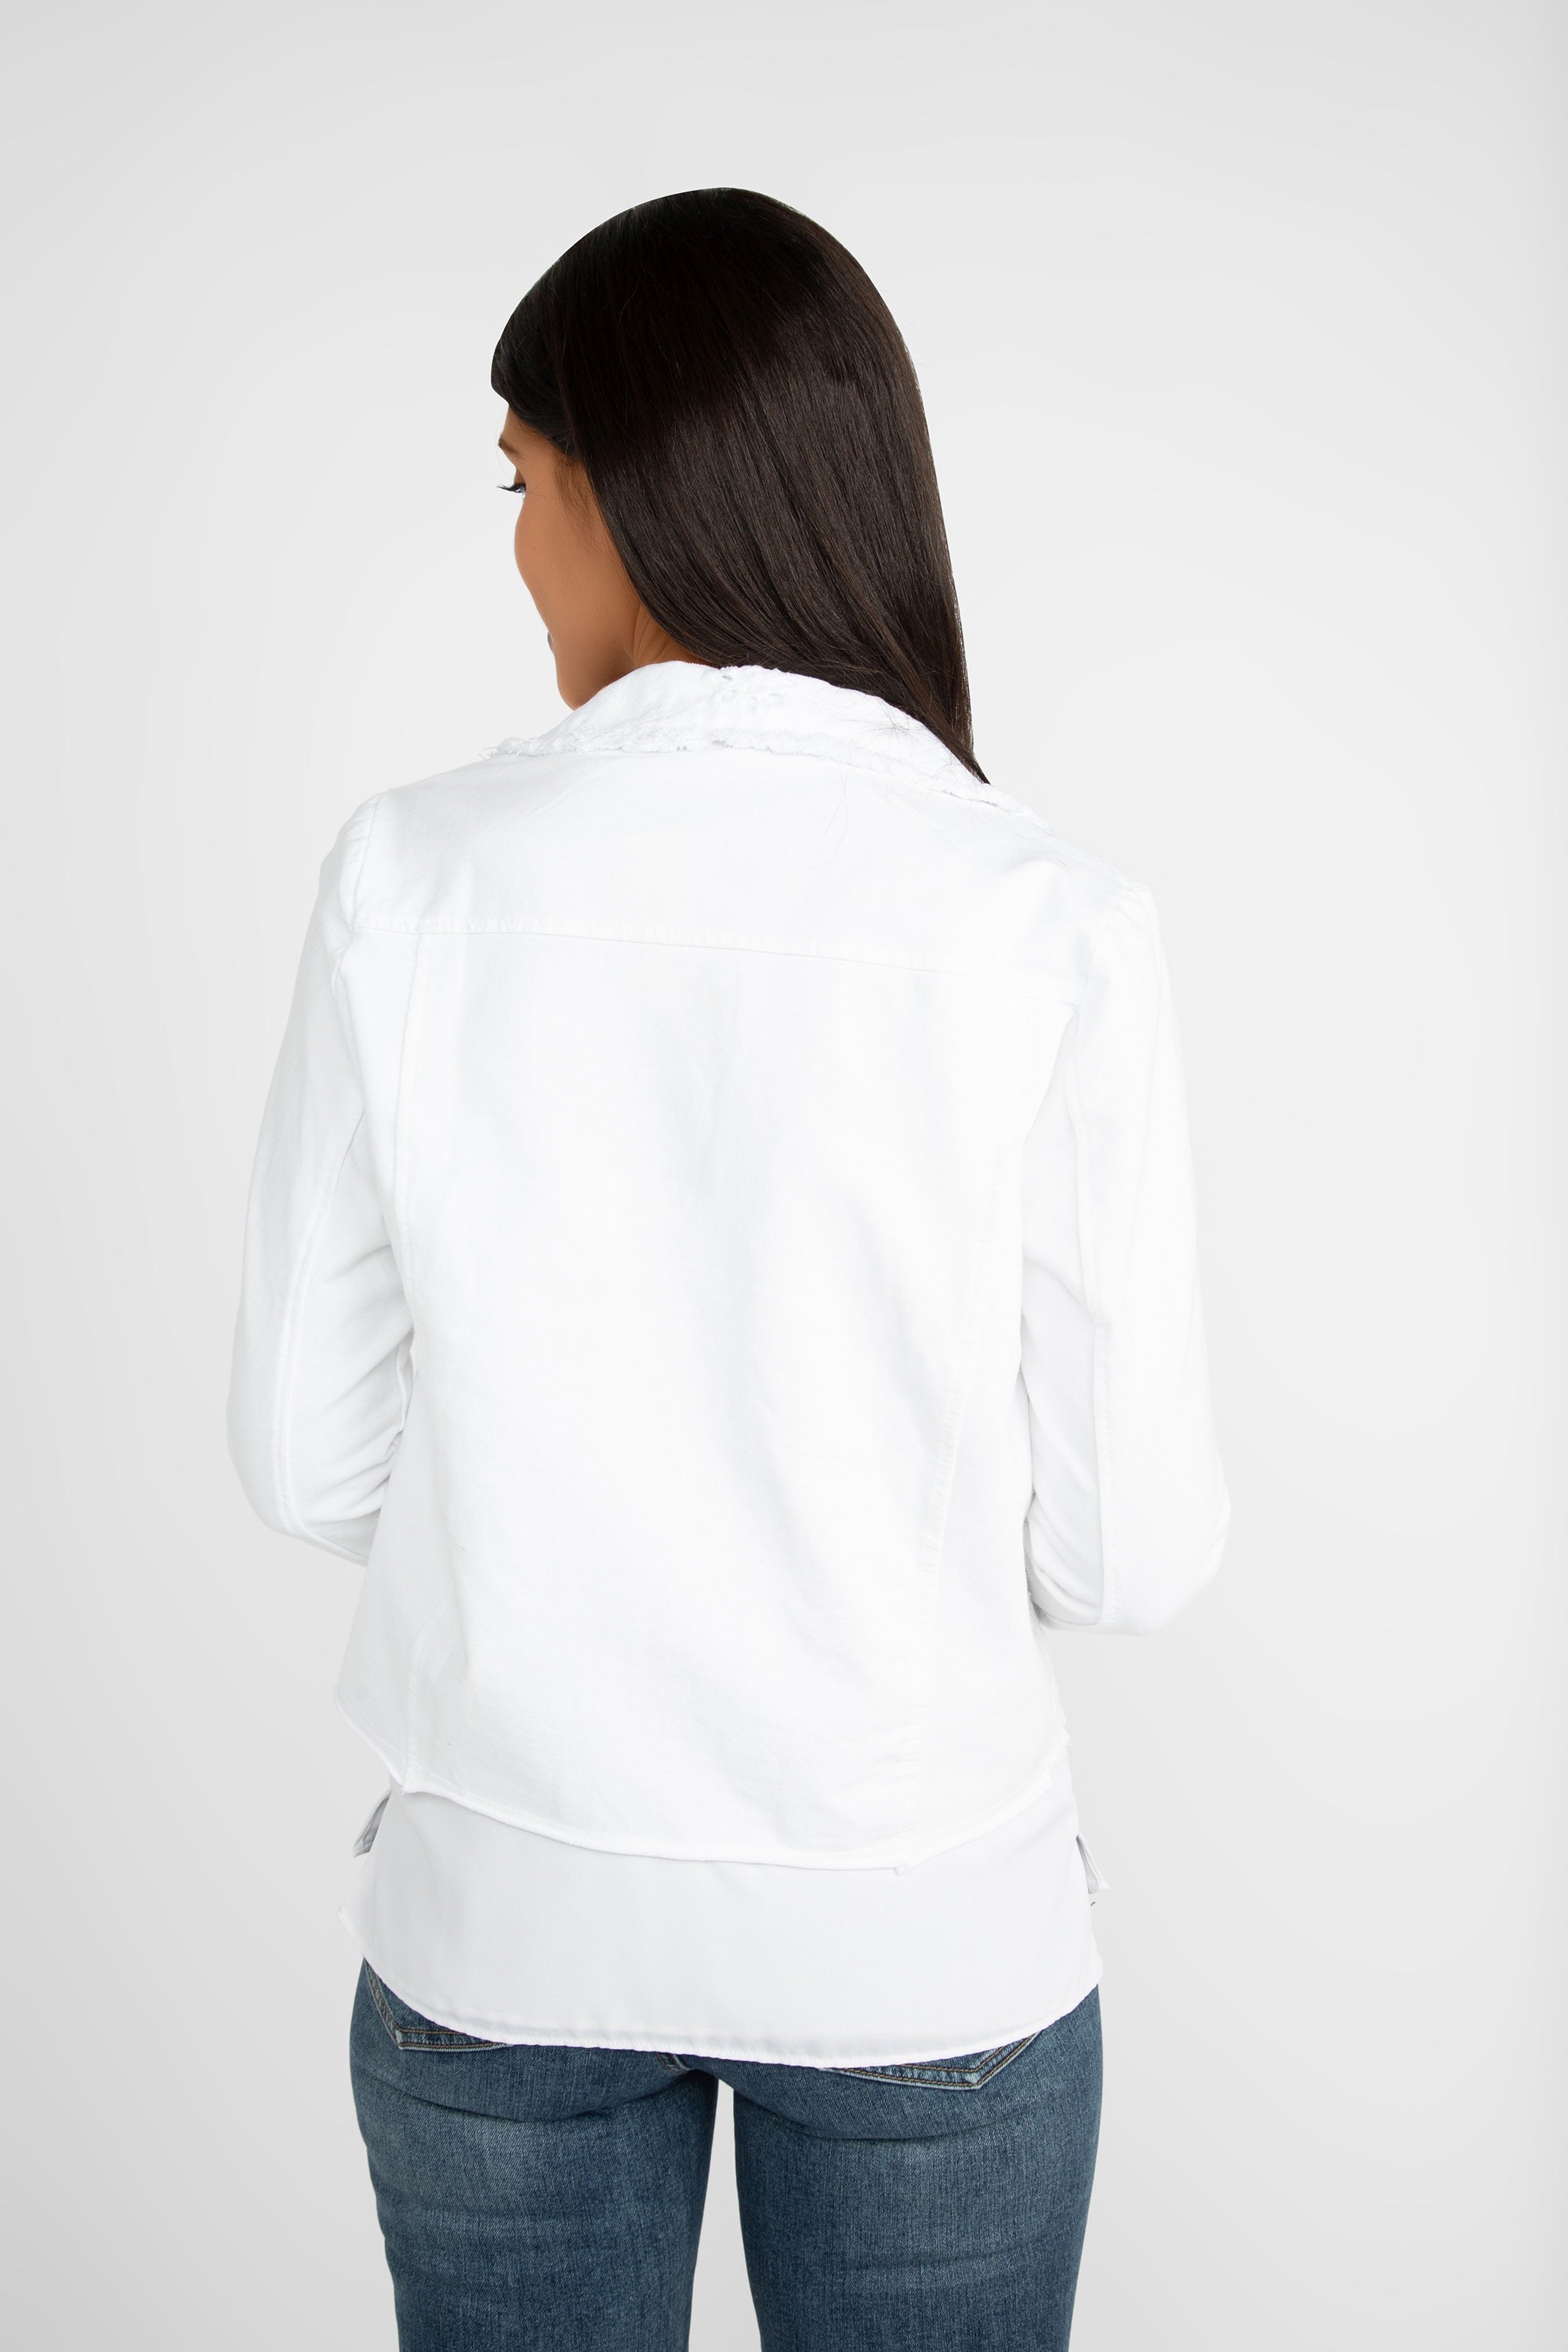 Femme Fatale (S1-23JKT) Women's Long Sleeve, Button Up Eyelet Lace Jean Jacket in White